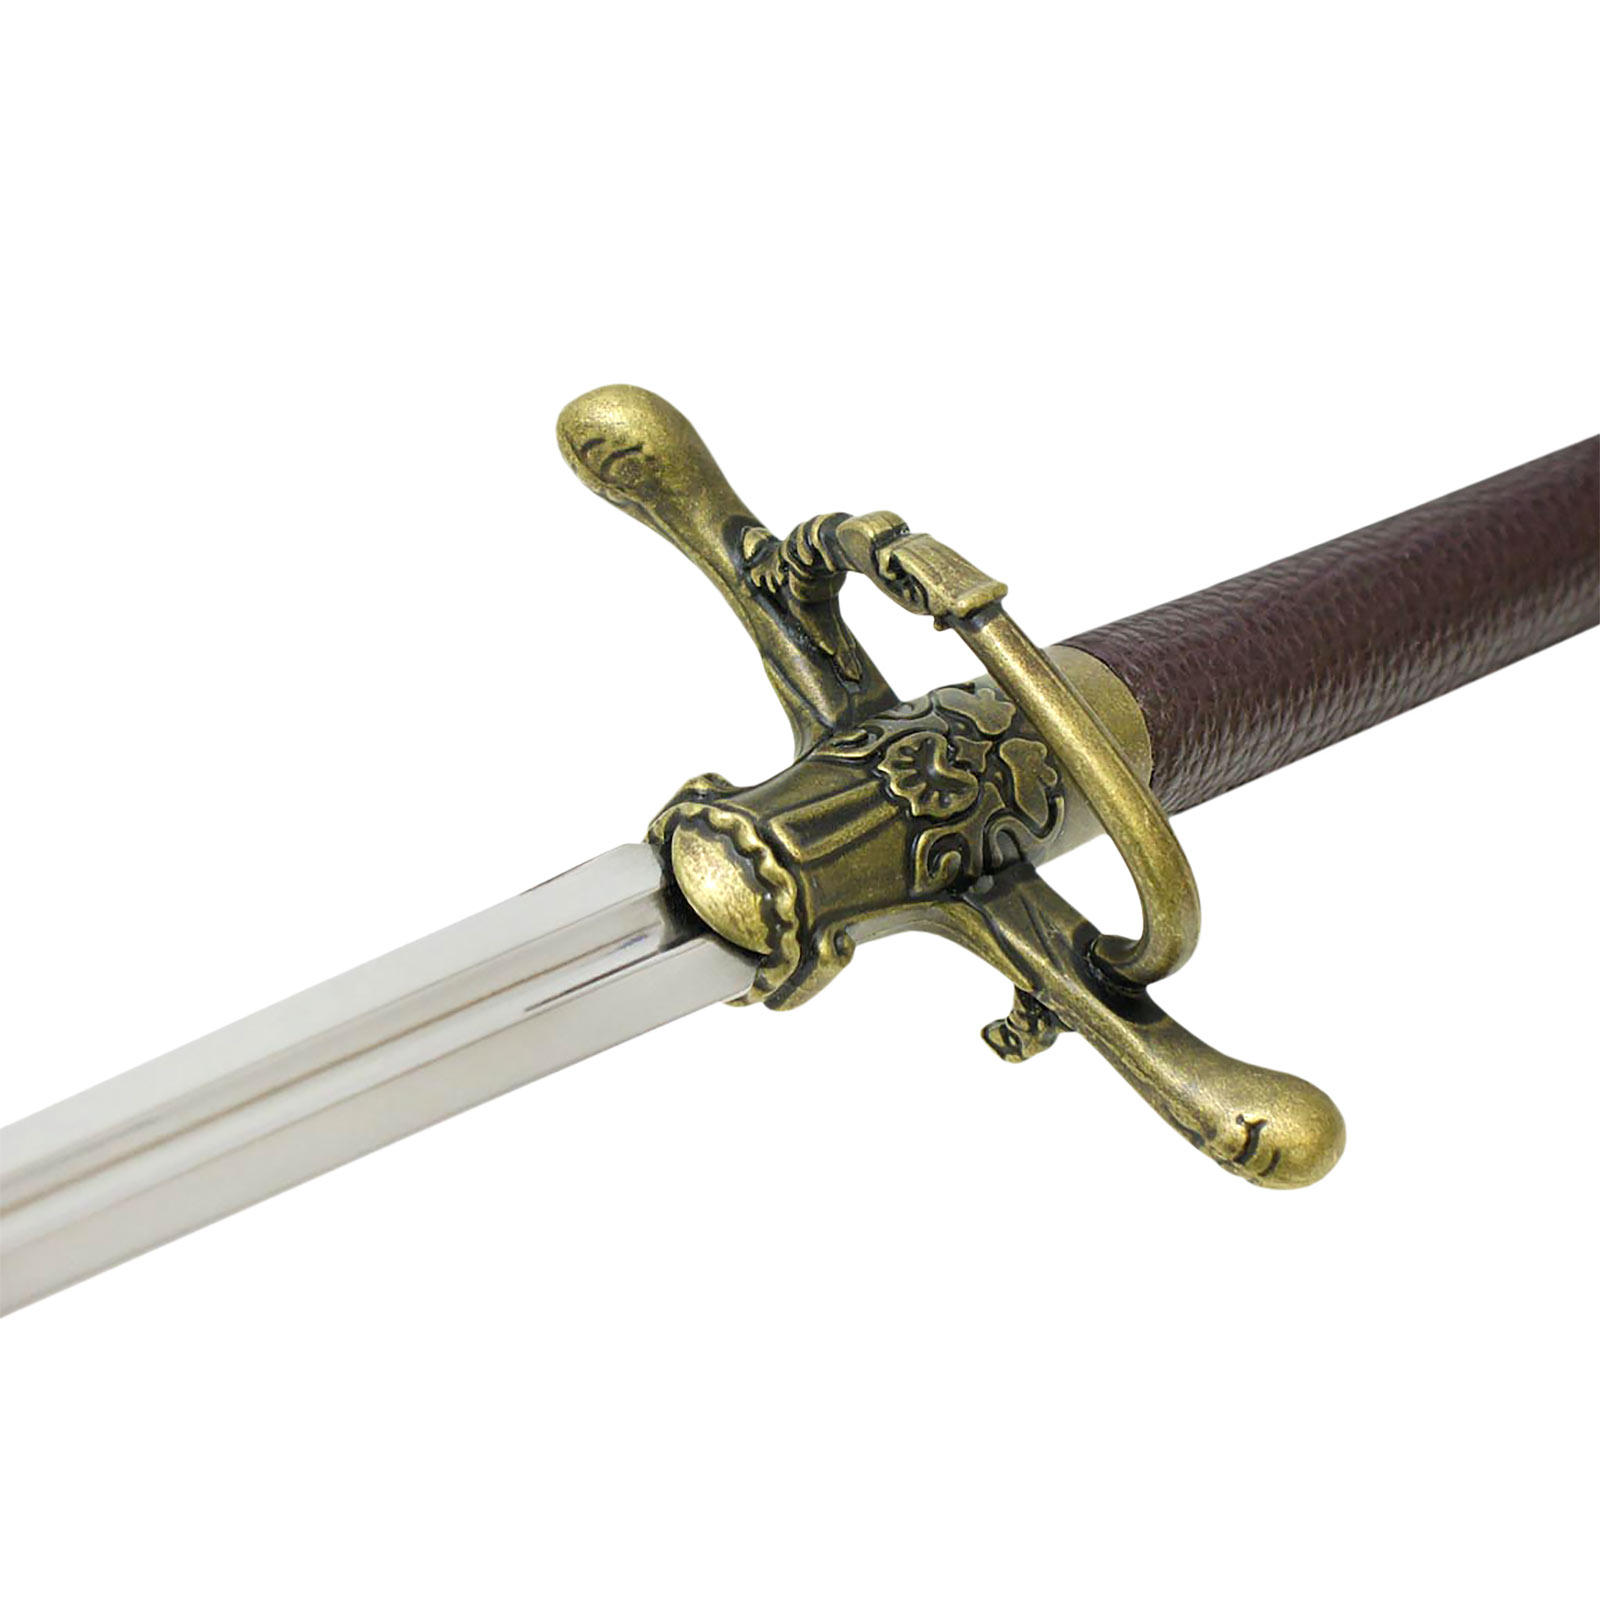 Game of Thrones - Arya Stark's zwaard Needle